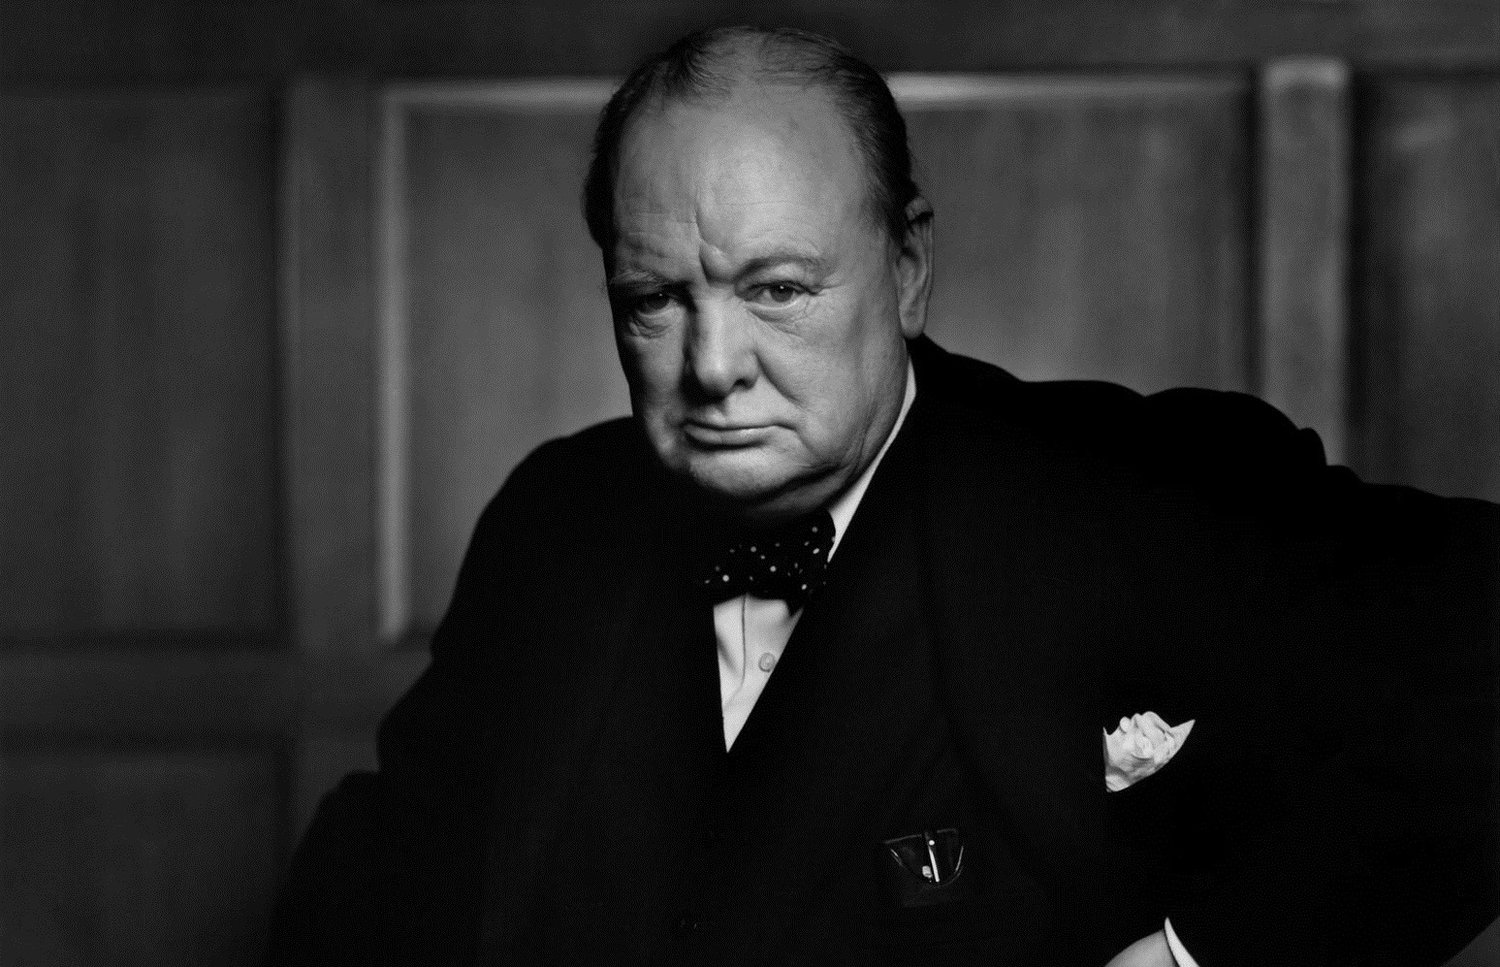 Юсуф Карш: "Портрет Уинстона Черчилля изменил мою жизнь" .